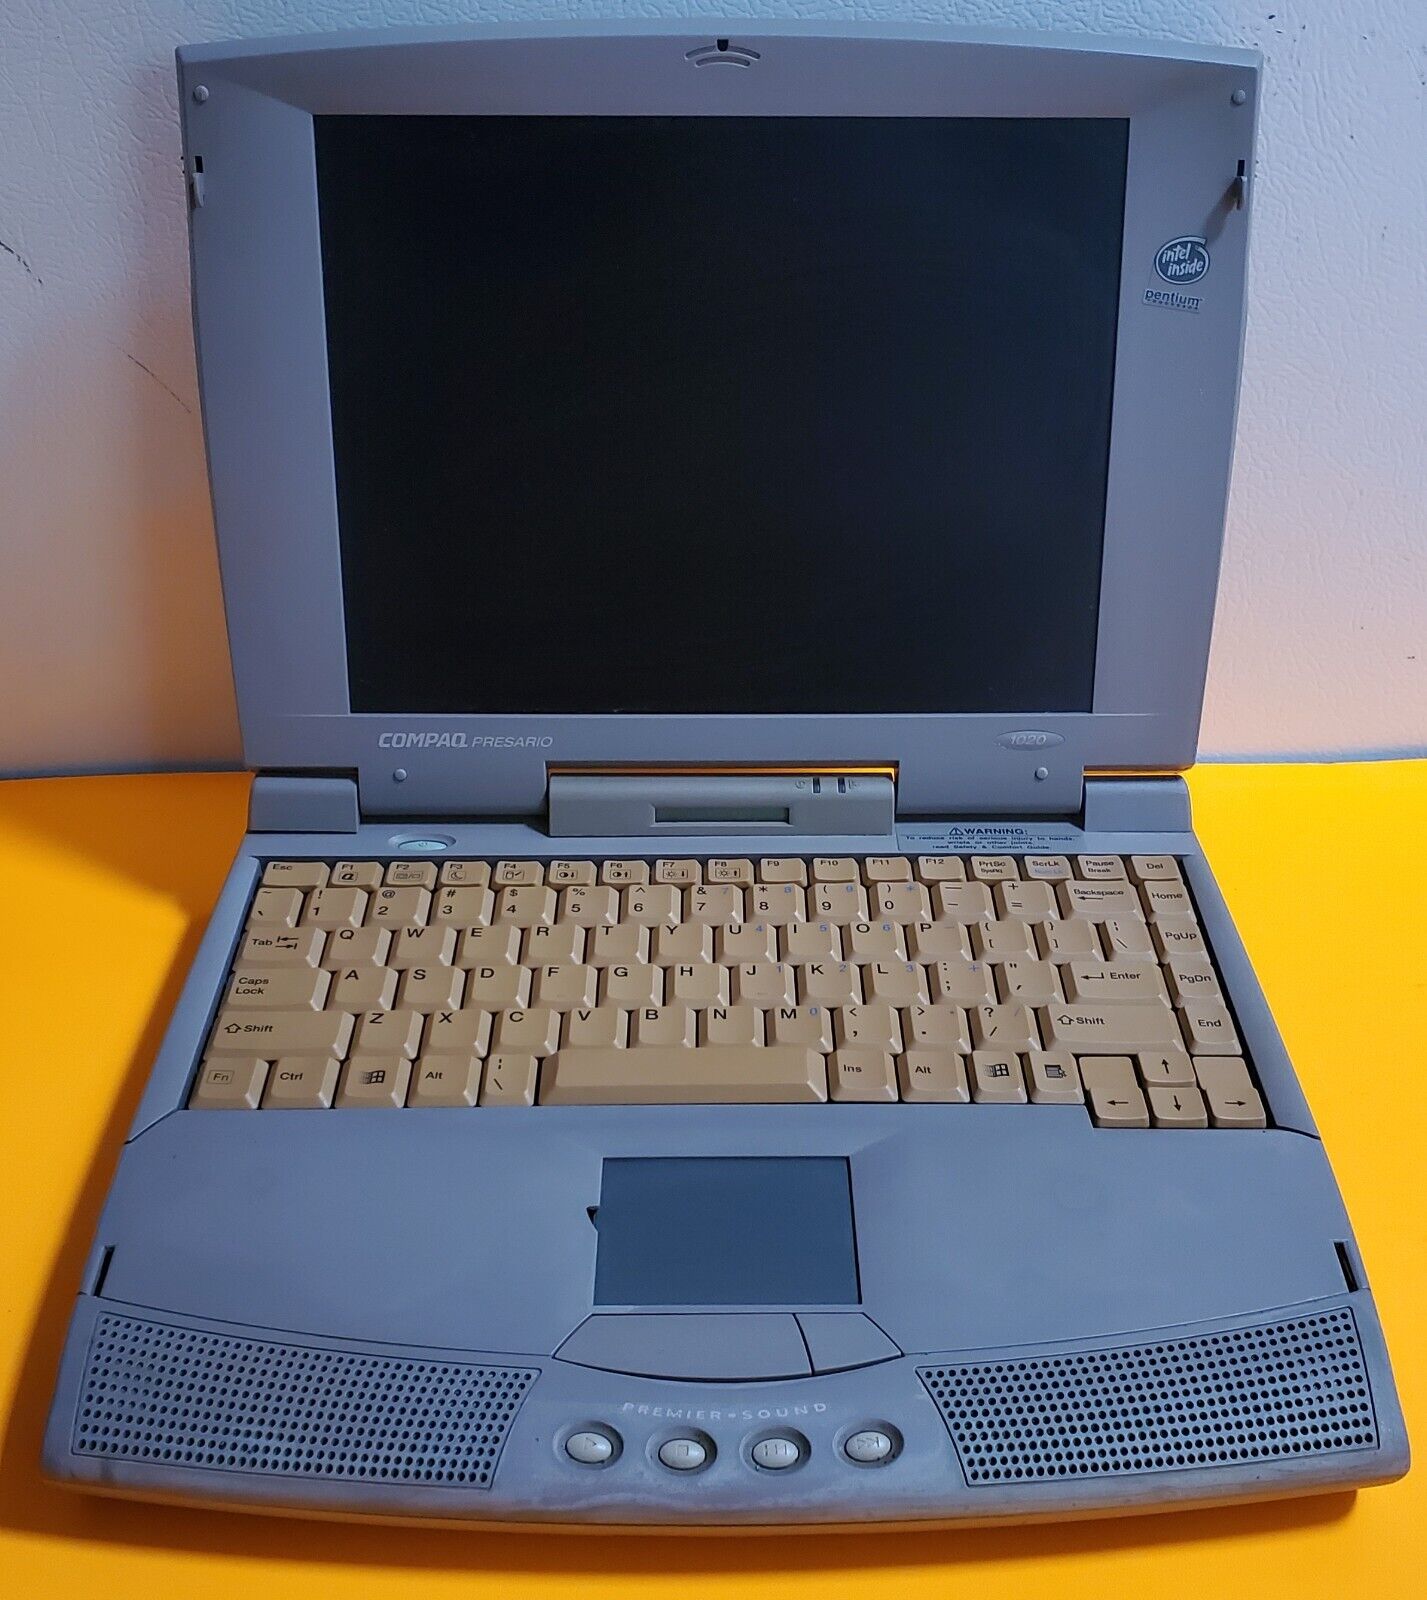 Compaq Presario 1020 Laptop Computer Vintage Poor Cond For Parts PLEASE READ